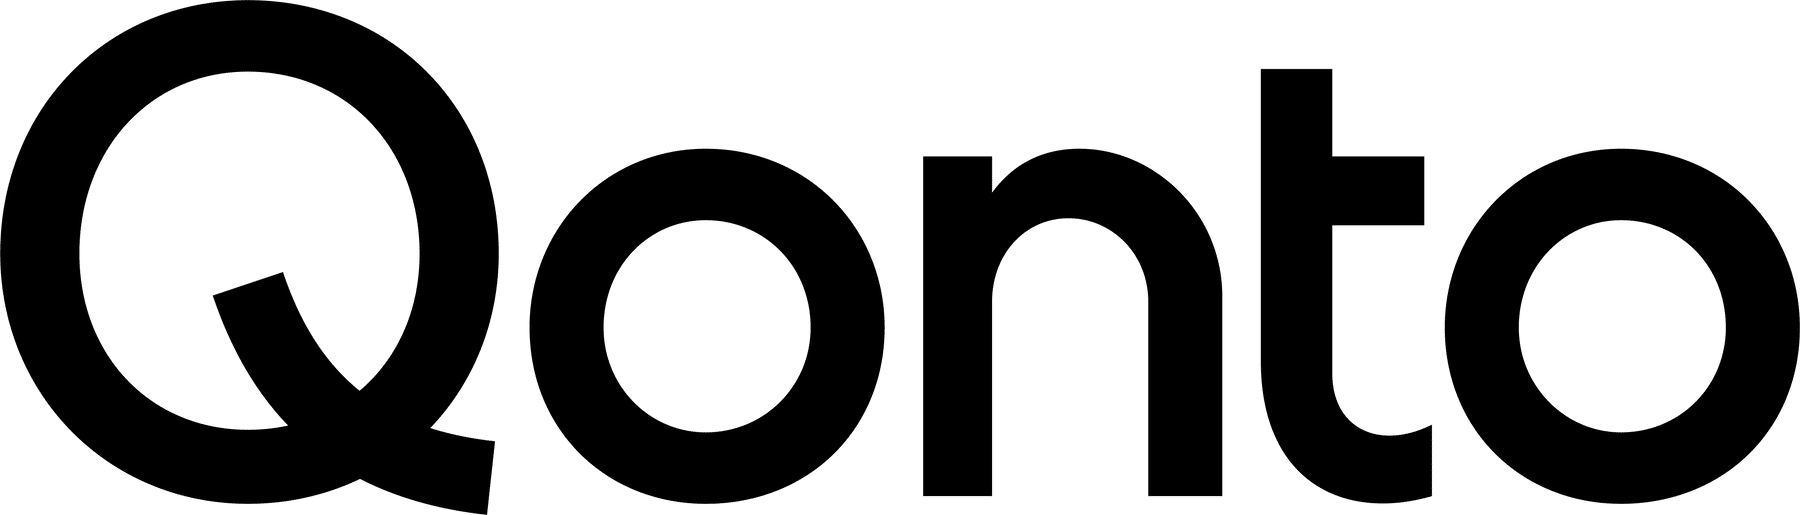 Qonto – Contacter le service clients